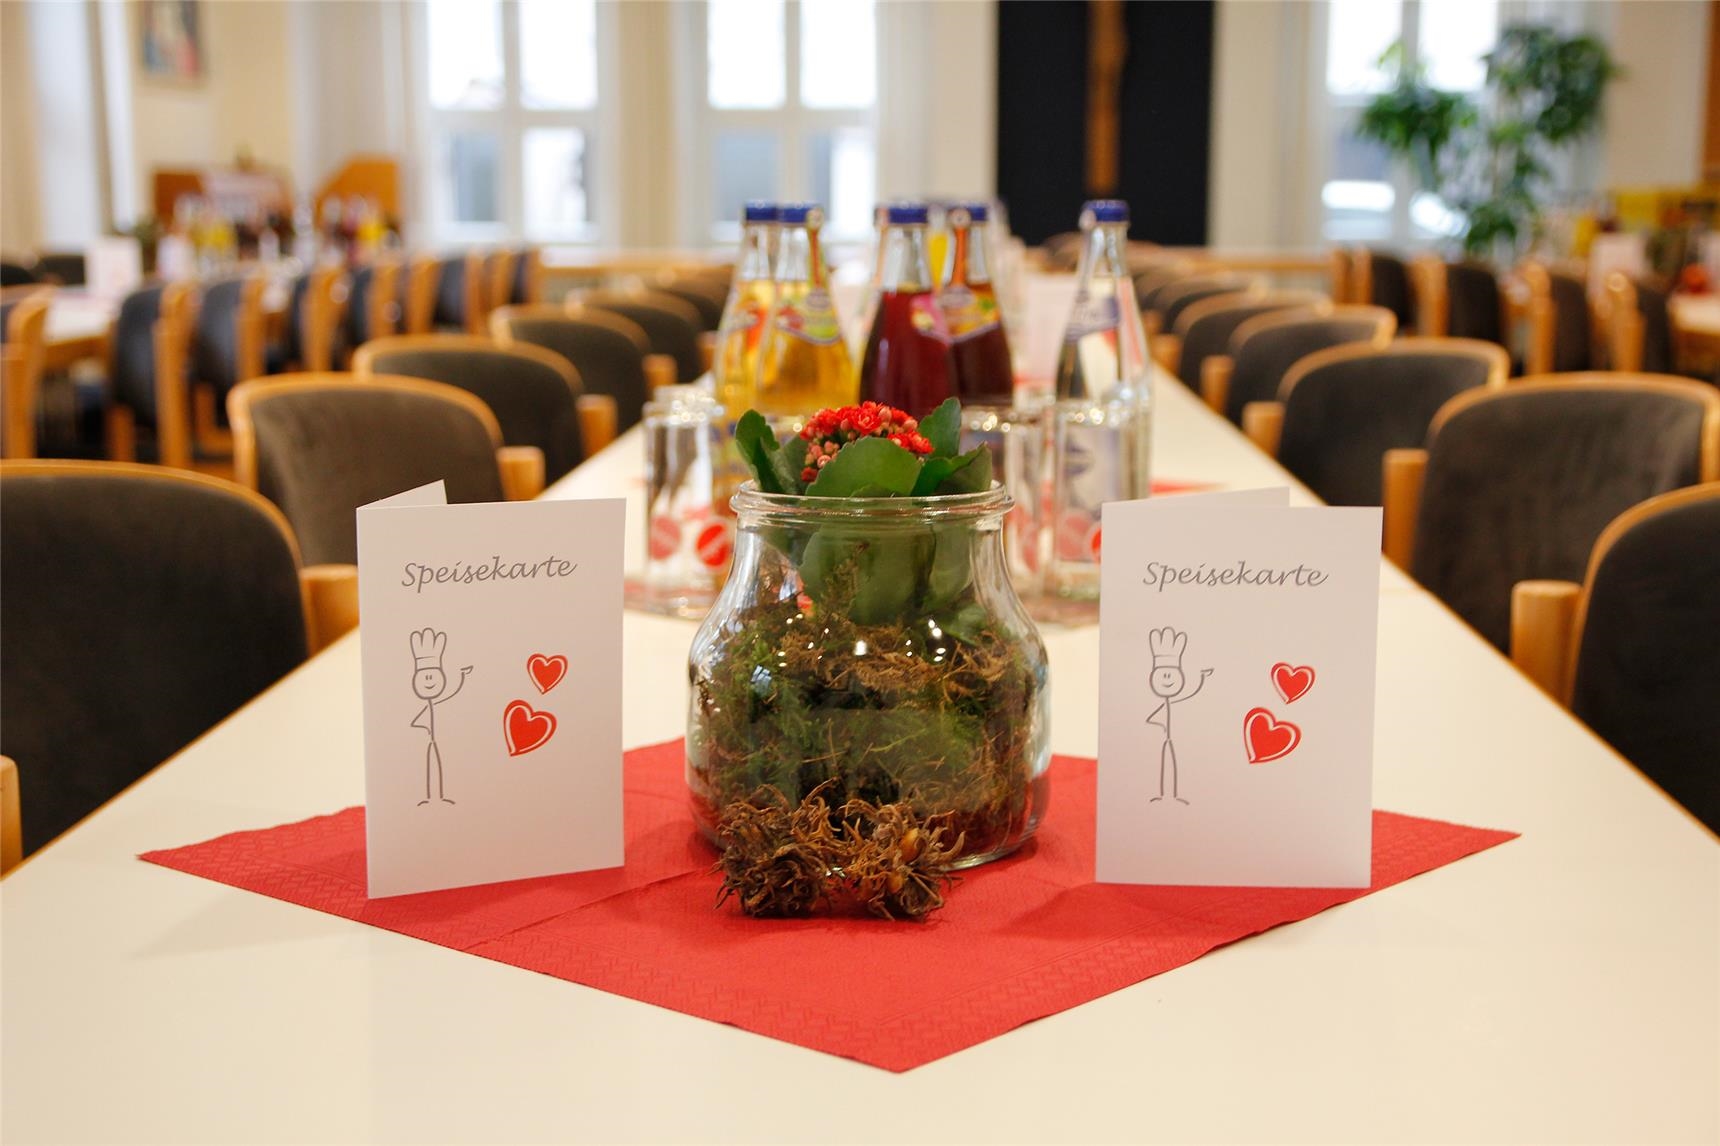 Liebevoll und schön gedeckte Tische empfingen die Gäste.  (Bernhard Gattner)